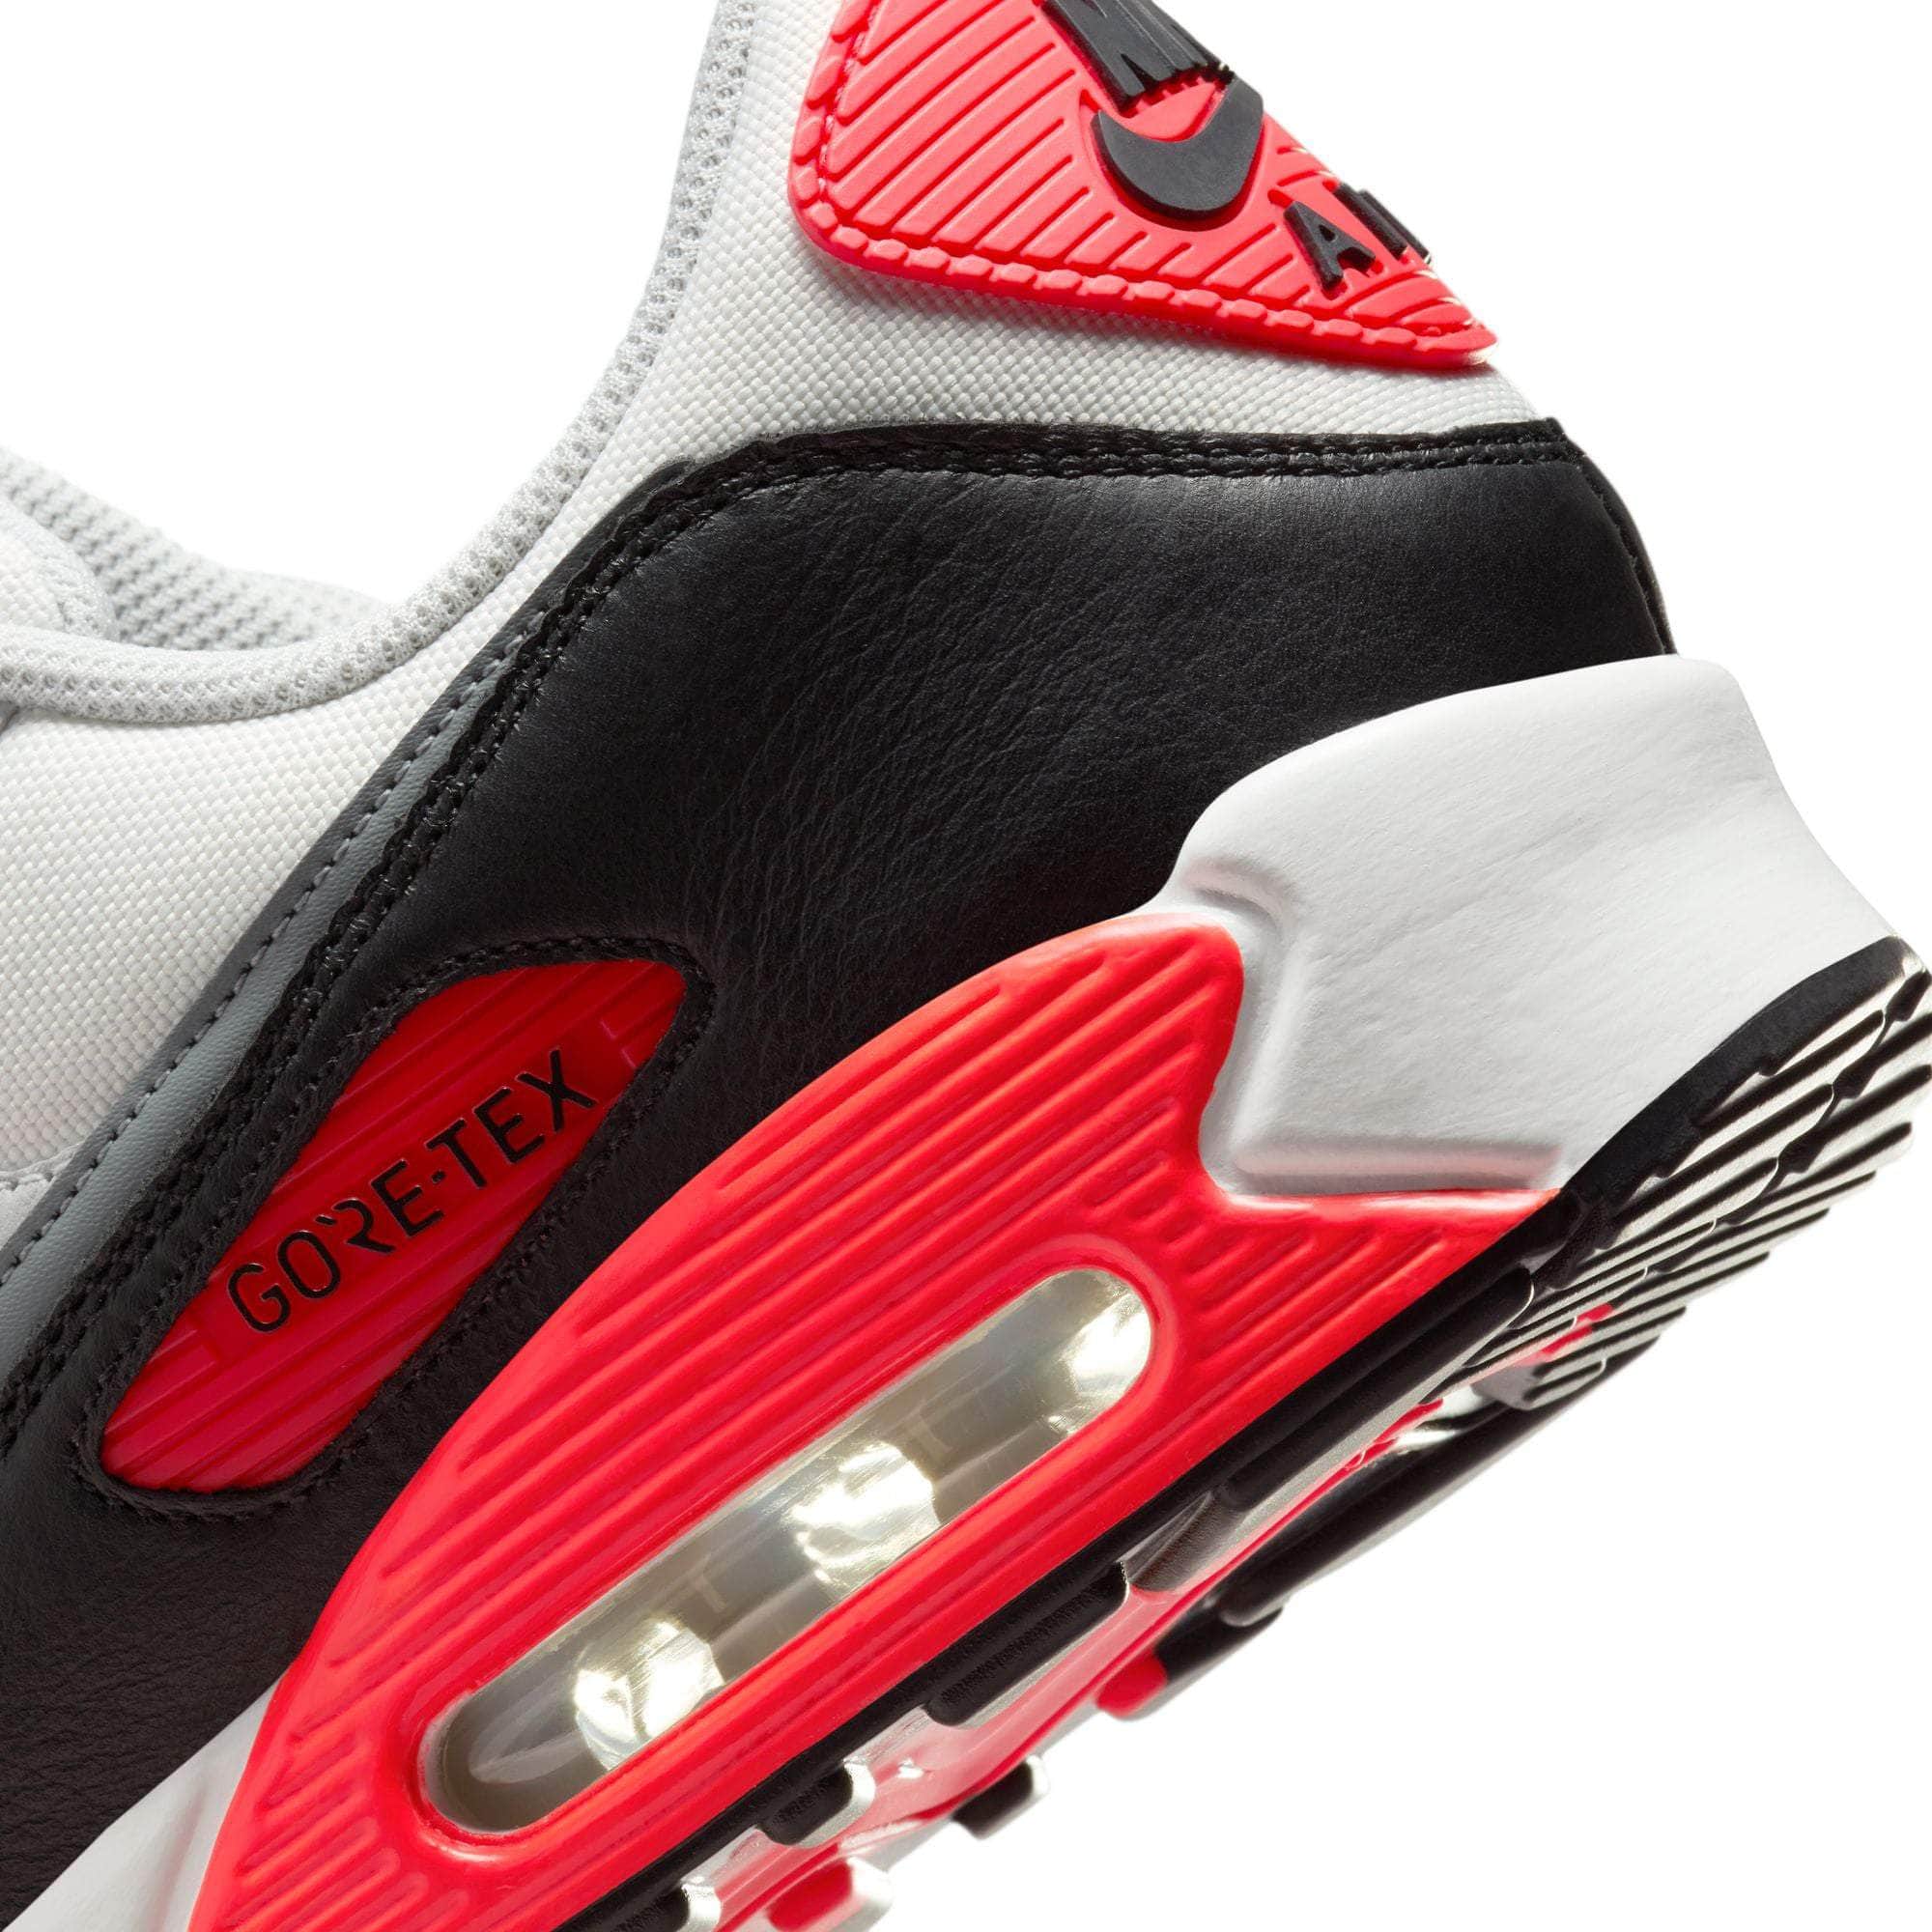 Nike FOOTWEAR Nike Air Max 90 Gore-Tex “Infrared” - Men's